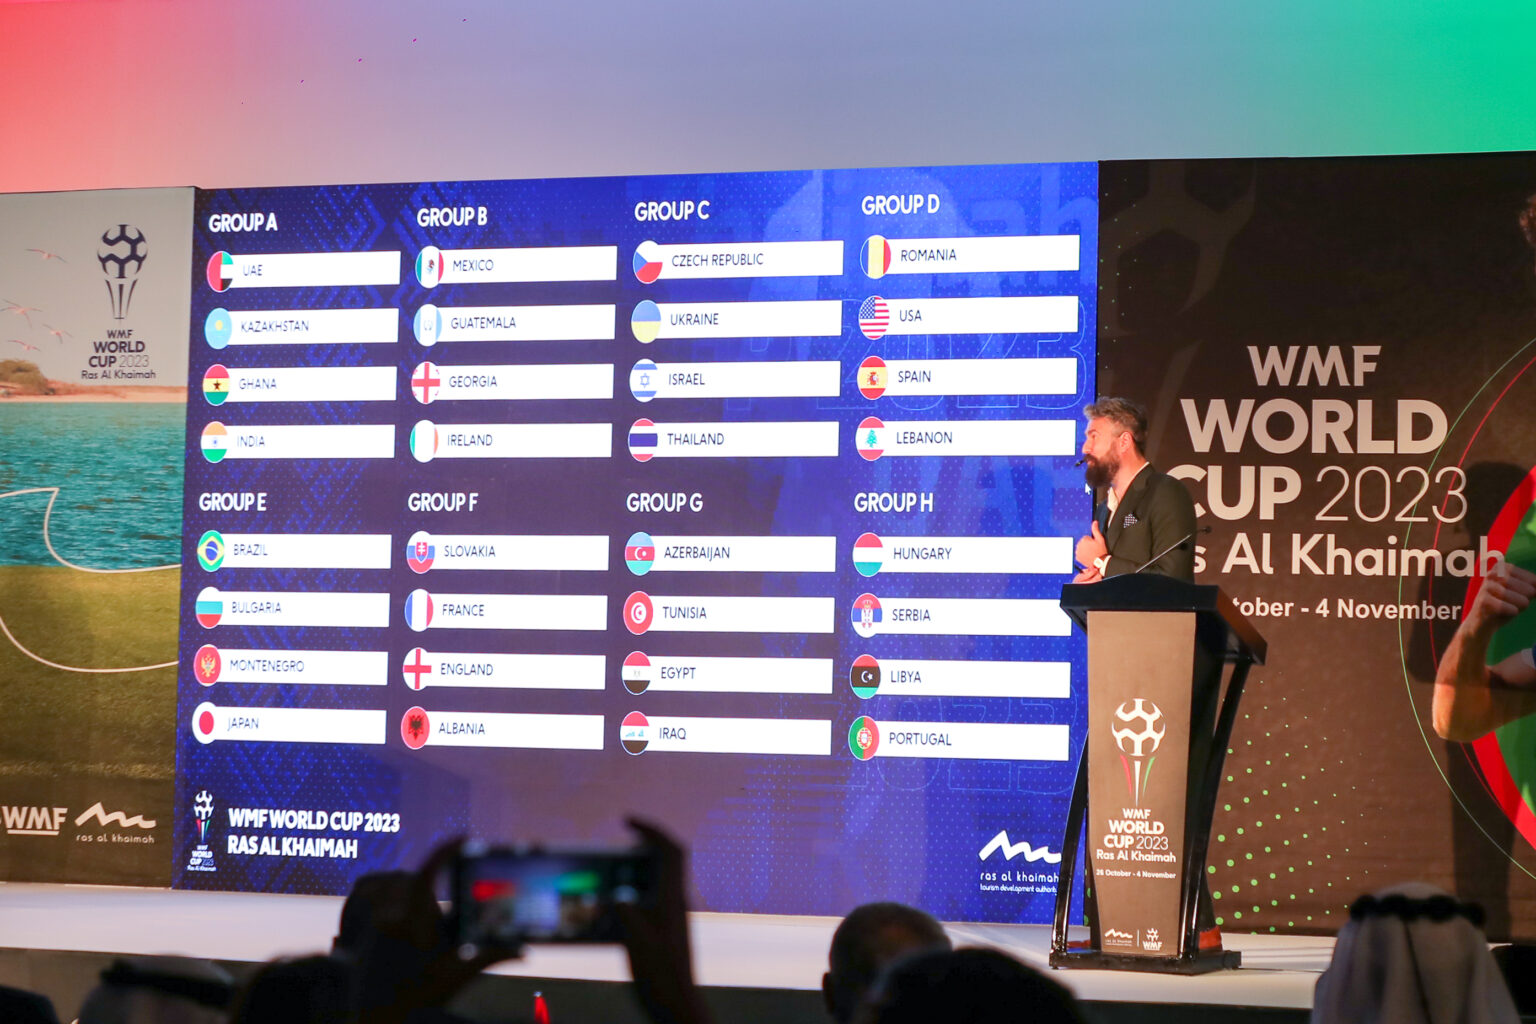 The 2023 WMF Minifootball World Cup Ras Al Khaimah countdown begins